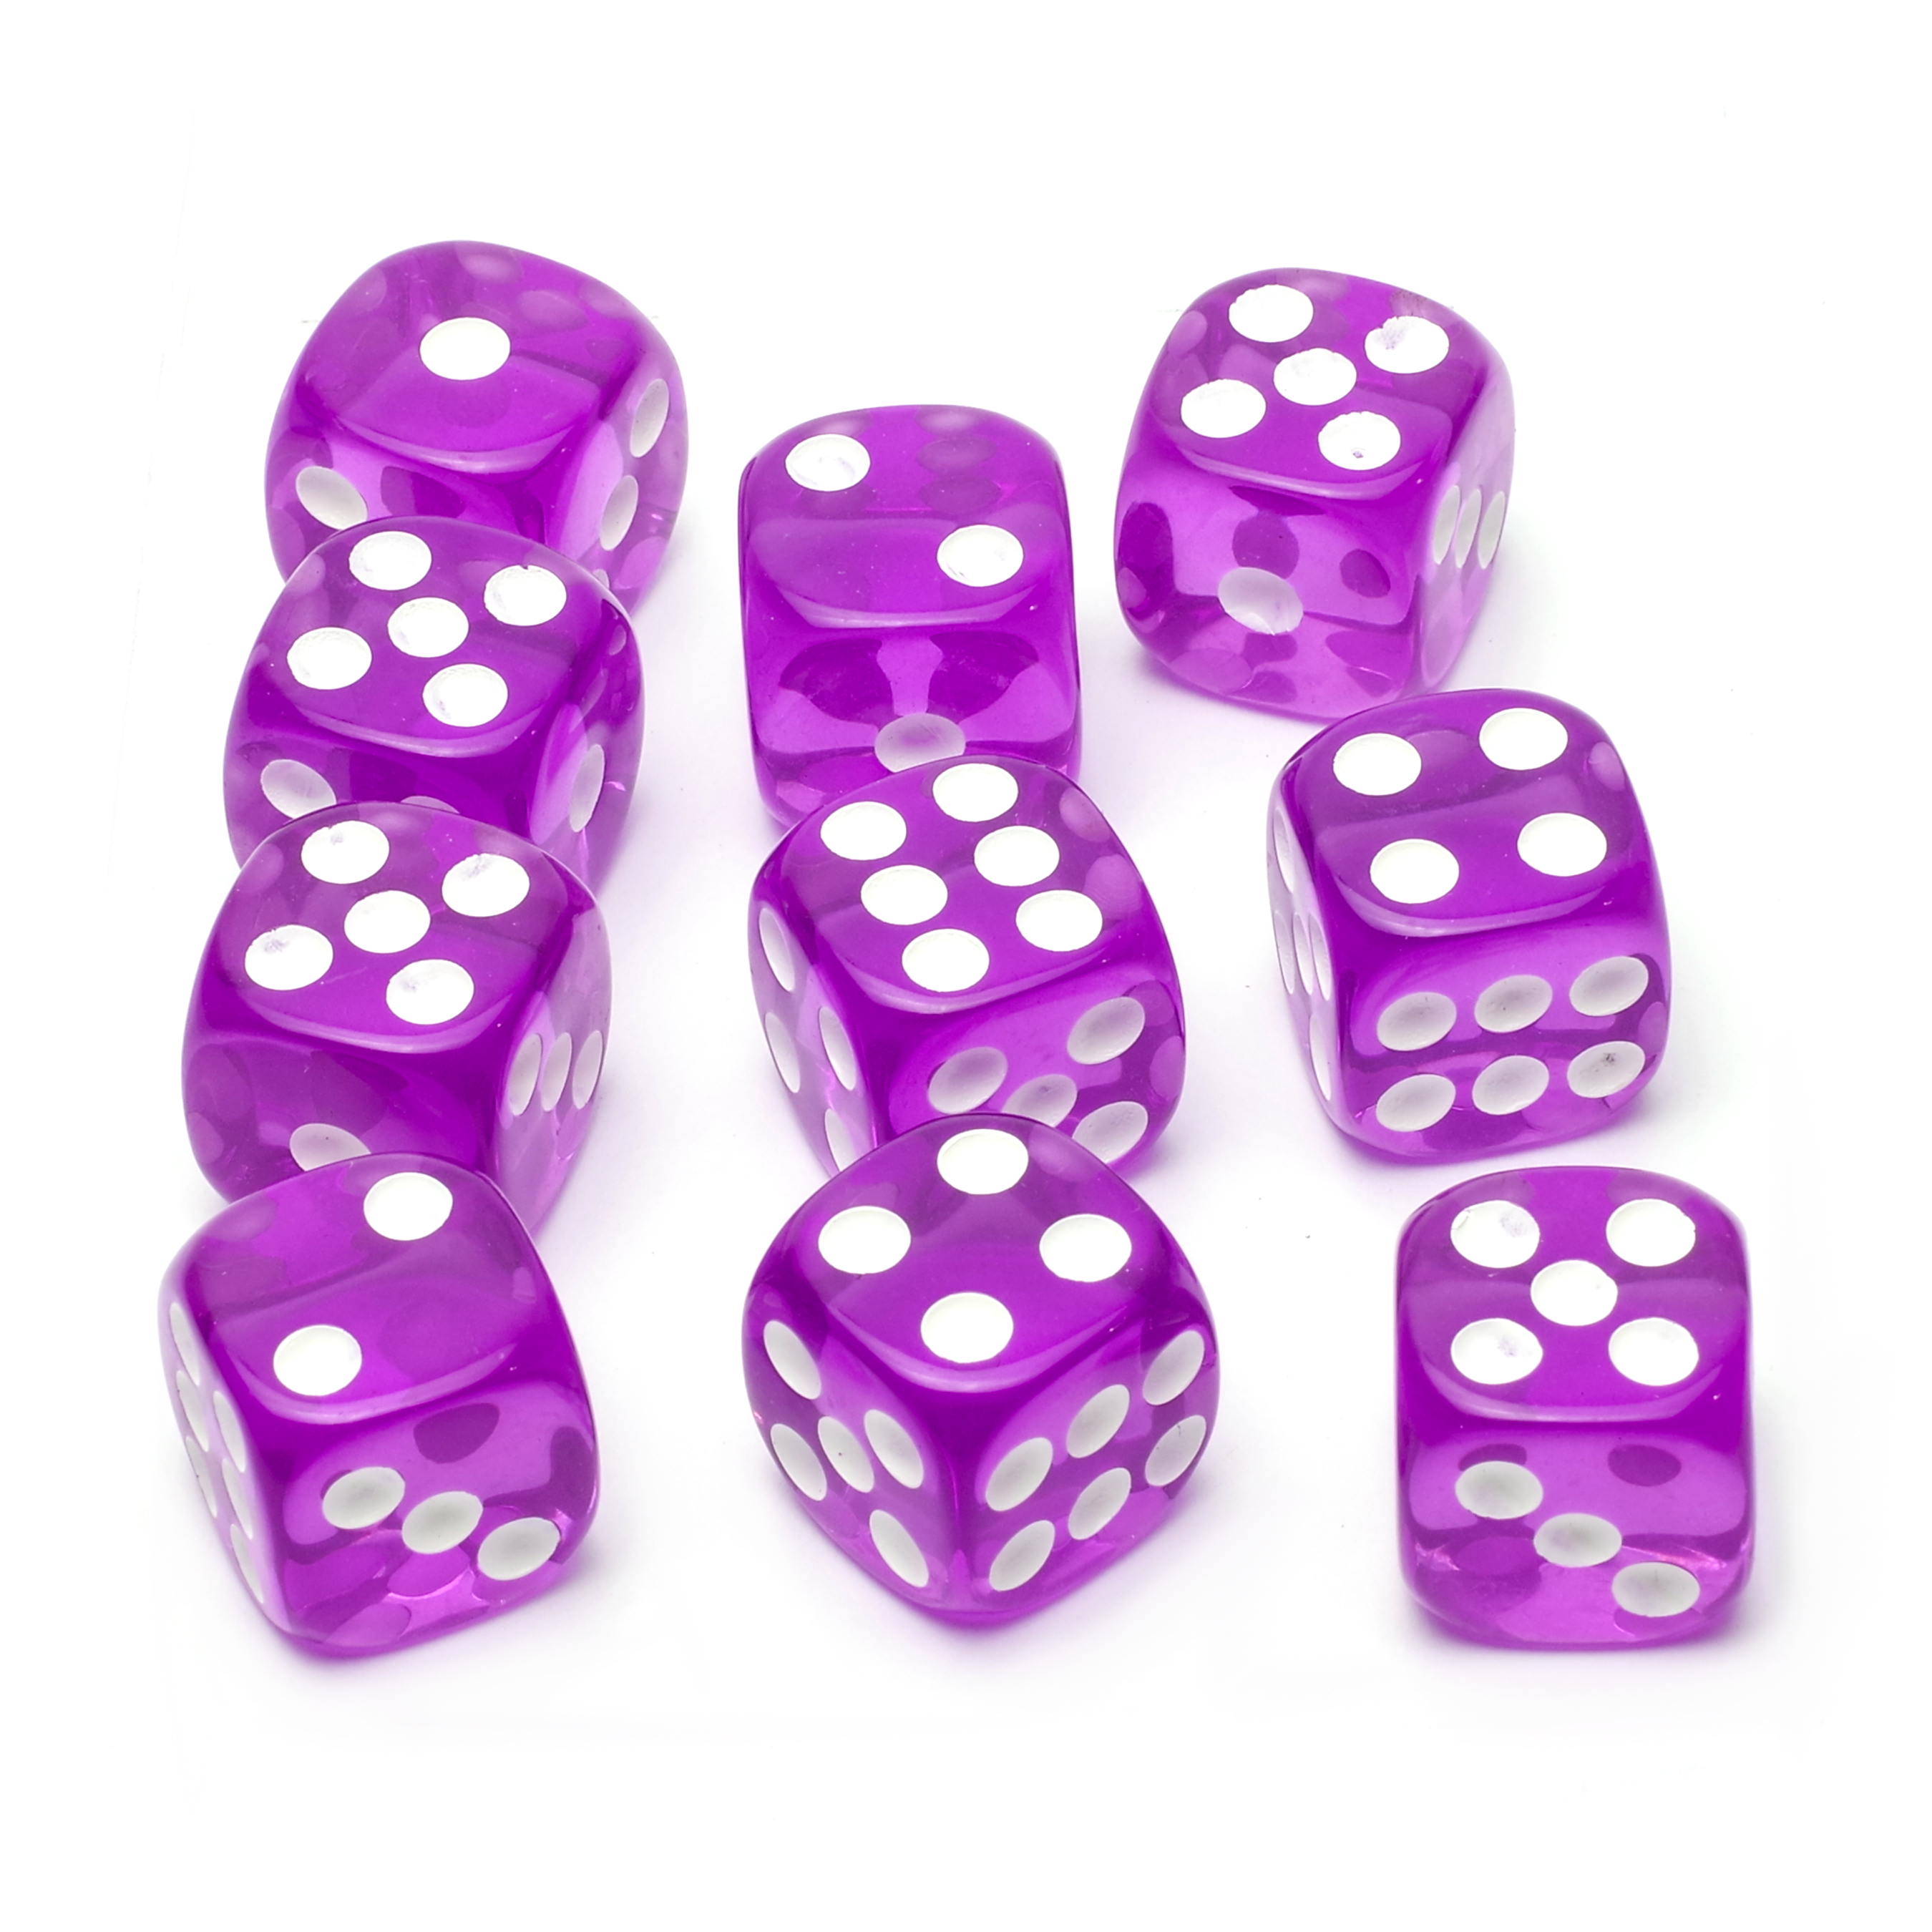 Набор кубиков STUFF-PRO d6, 10 шт, 16мм, прозрачные, фиолетовый набор игральных кубиков pandora box studio простые d6 16мм 12 шт бело